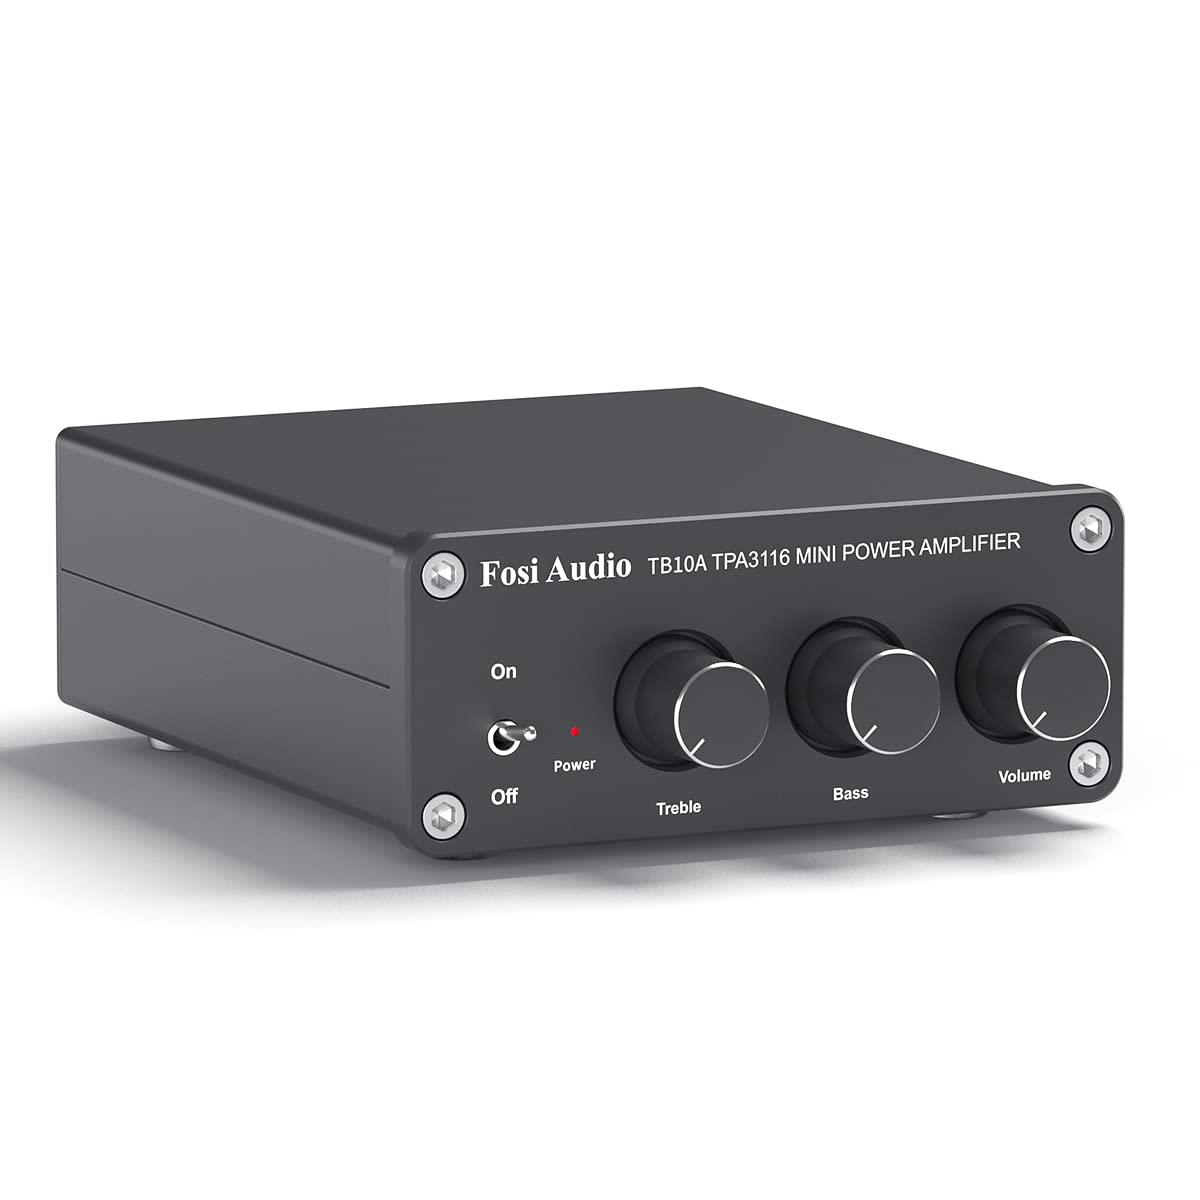 Fosi Audio TB10A 2 チャンネルアンプ 100W x 2 パワーアンプ ステレオ オーディオアンプ レシーバー TPA3116 ミニ Hi-Fi クラスD 内蔵アンプ 2.0CH ホームスピーカー用 低音と高音のコントロール付き (電源付き)画像